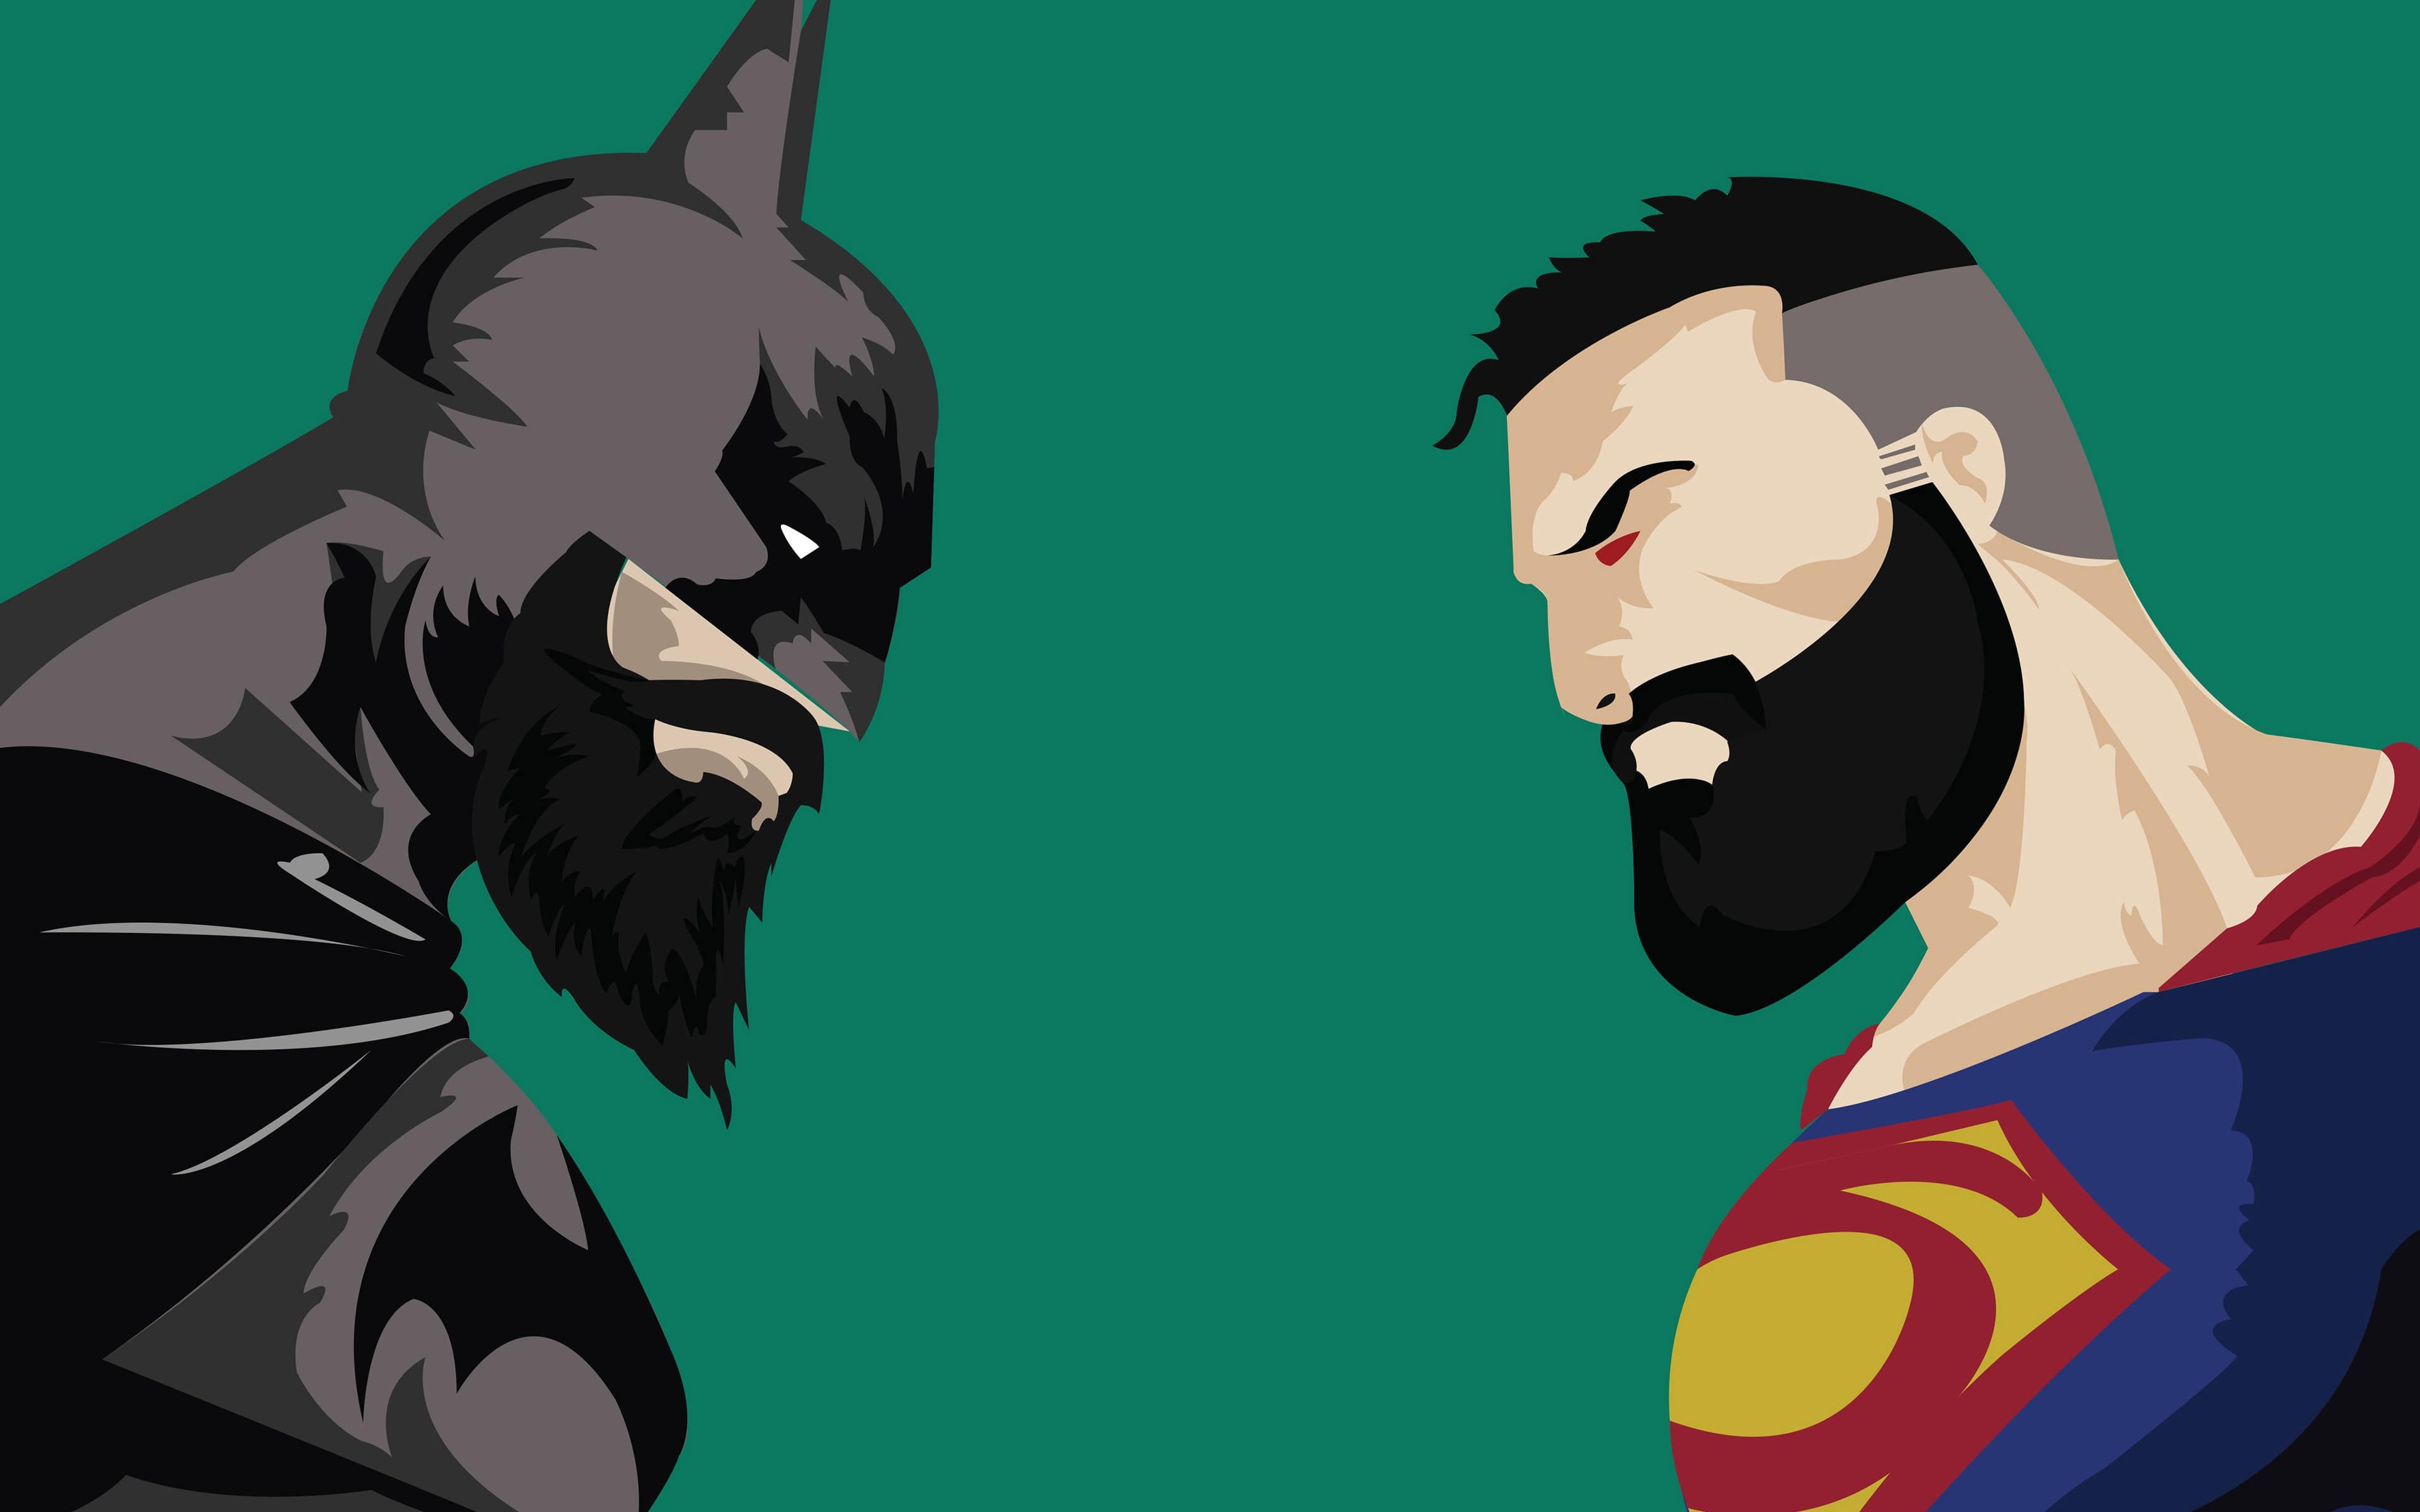 beard man wallpaper hd,fictional character,batman,cartoon,superhero,justice league